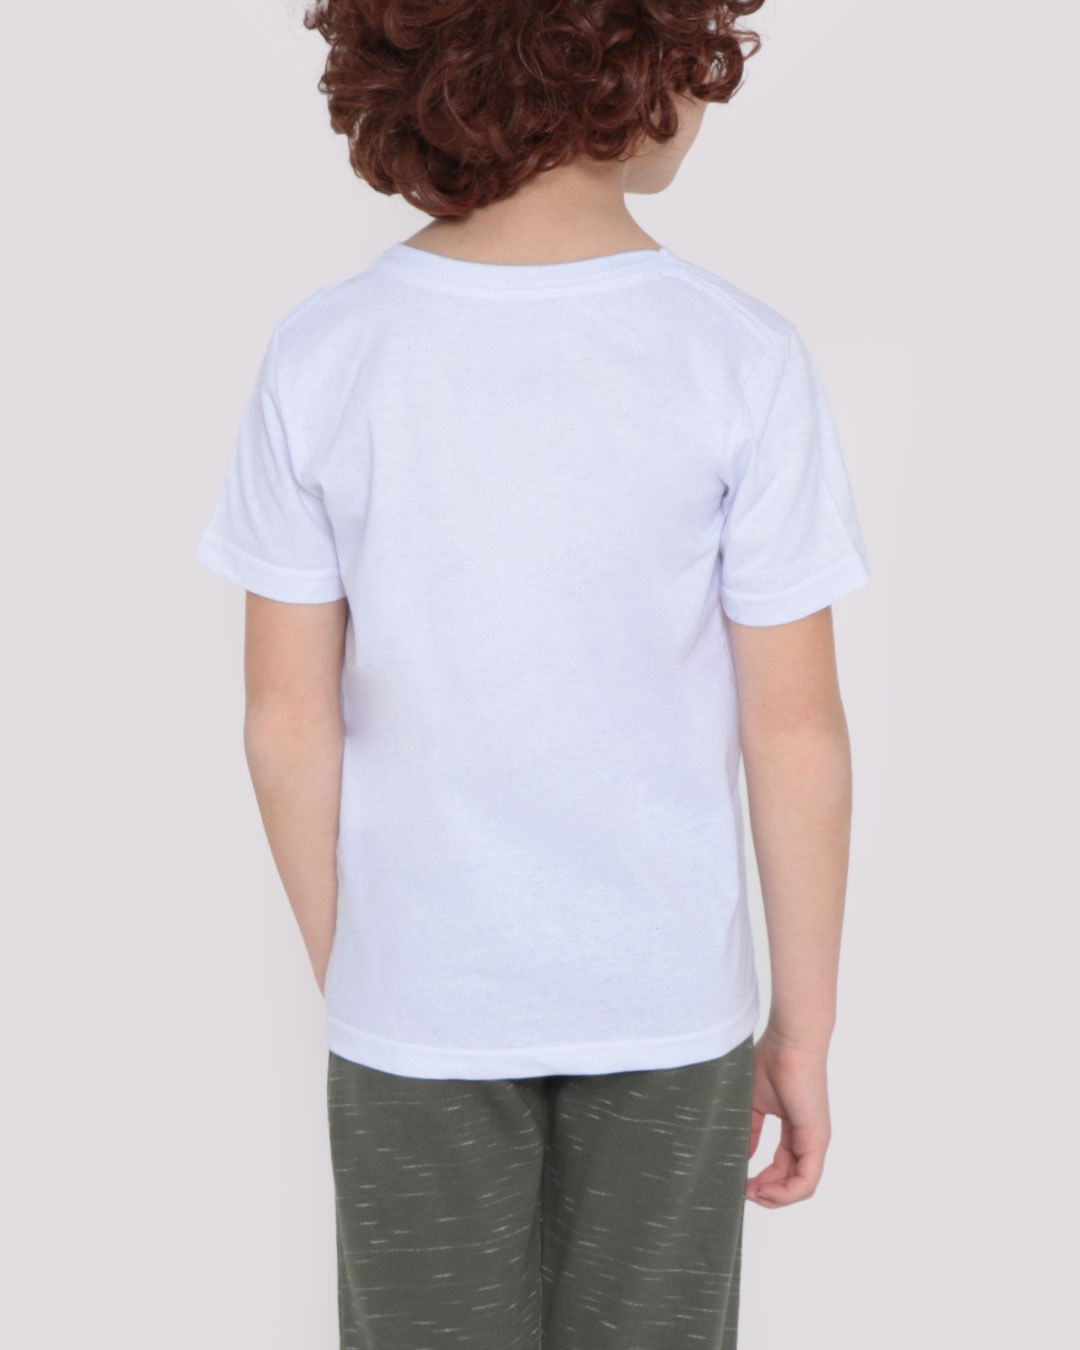 Camiseta-Infantil-Filho-Branca